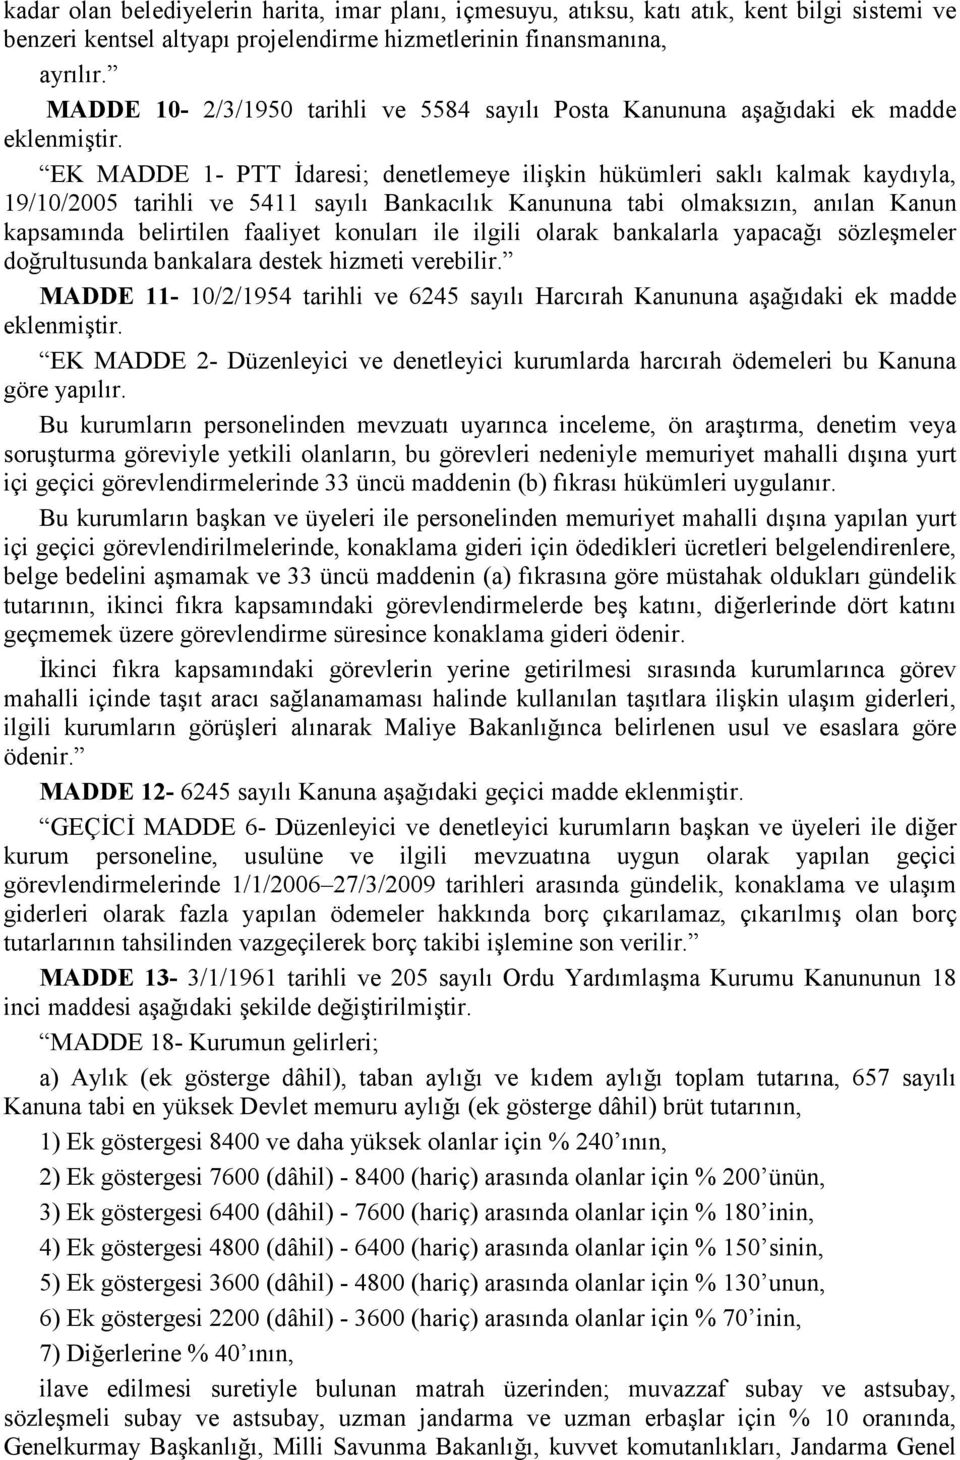 EK MADDE 1- PTT Đdaresi; denetlemeye ilişkin hükümleri saklı kalmak kaydıyla, 19/10/2005 tarihli ve 5411 sayılı Bankacılık Kanununa tabi olmaksızın, anılan Kanun kapsamında belirtilen faaliyet